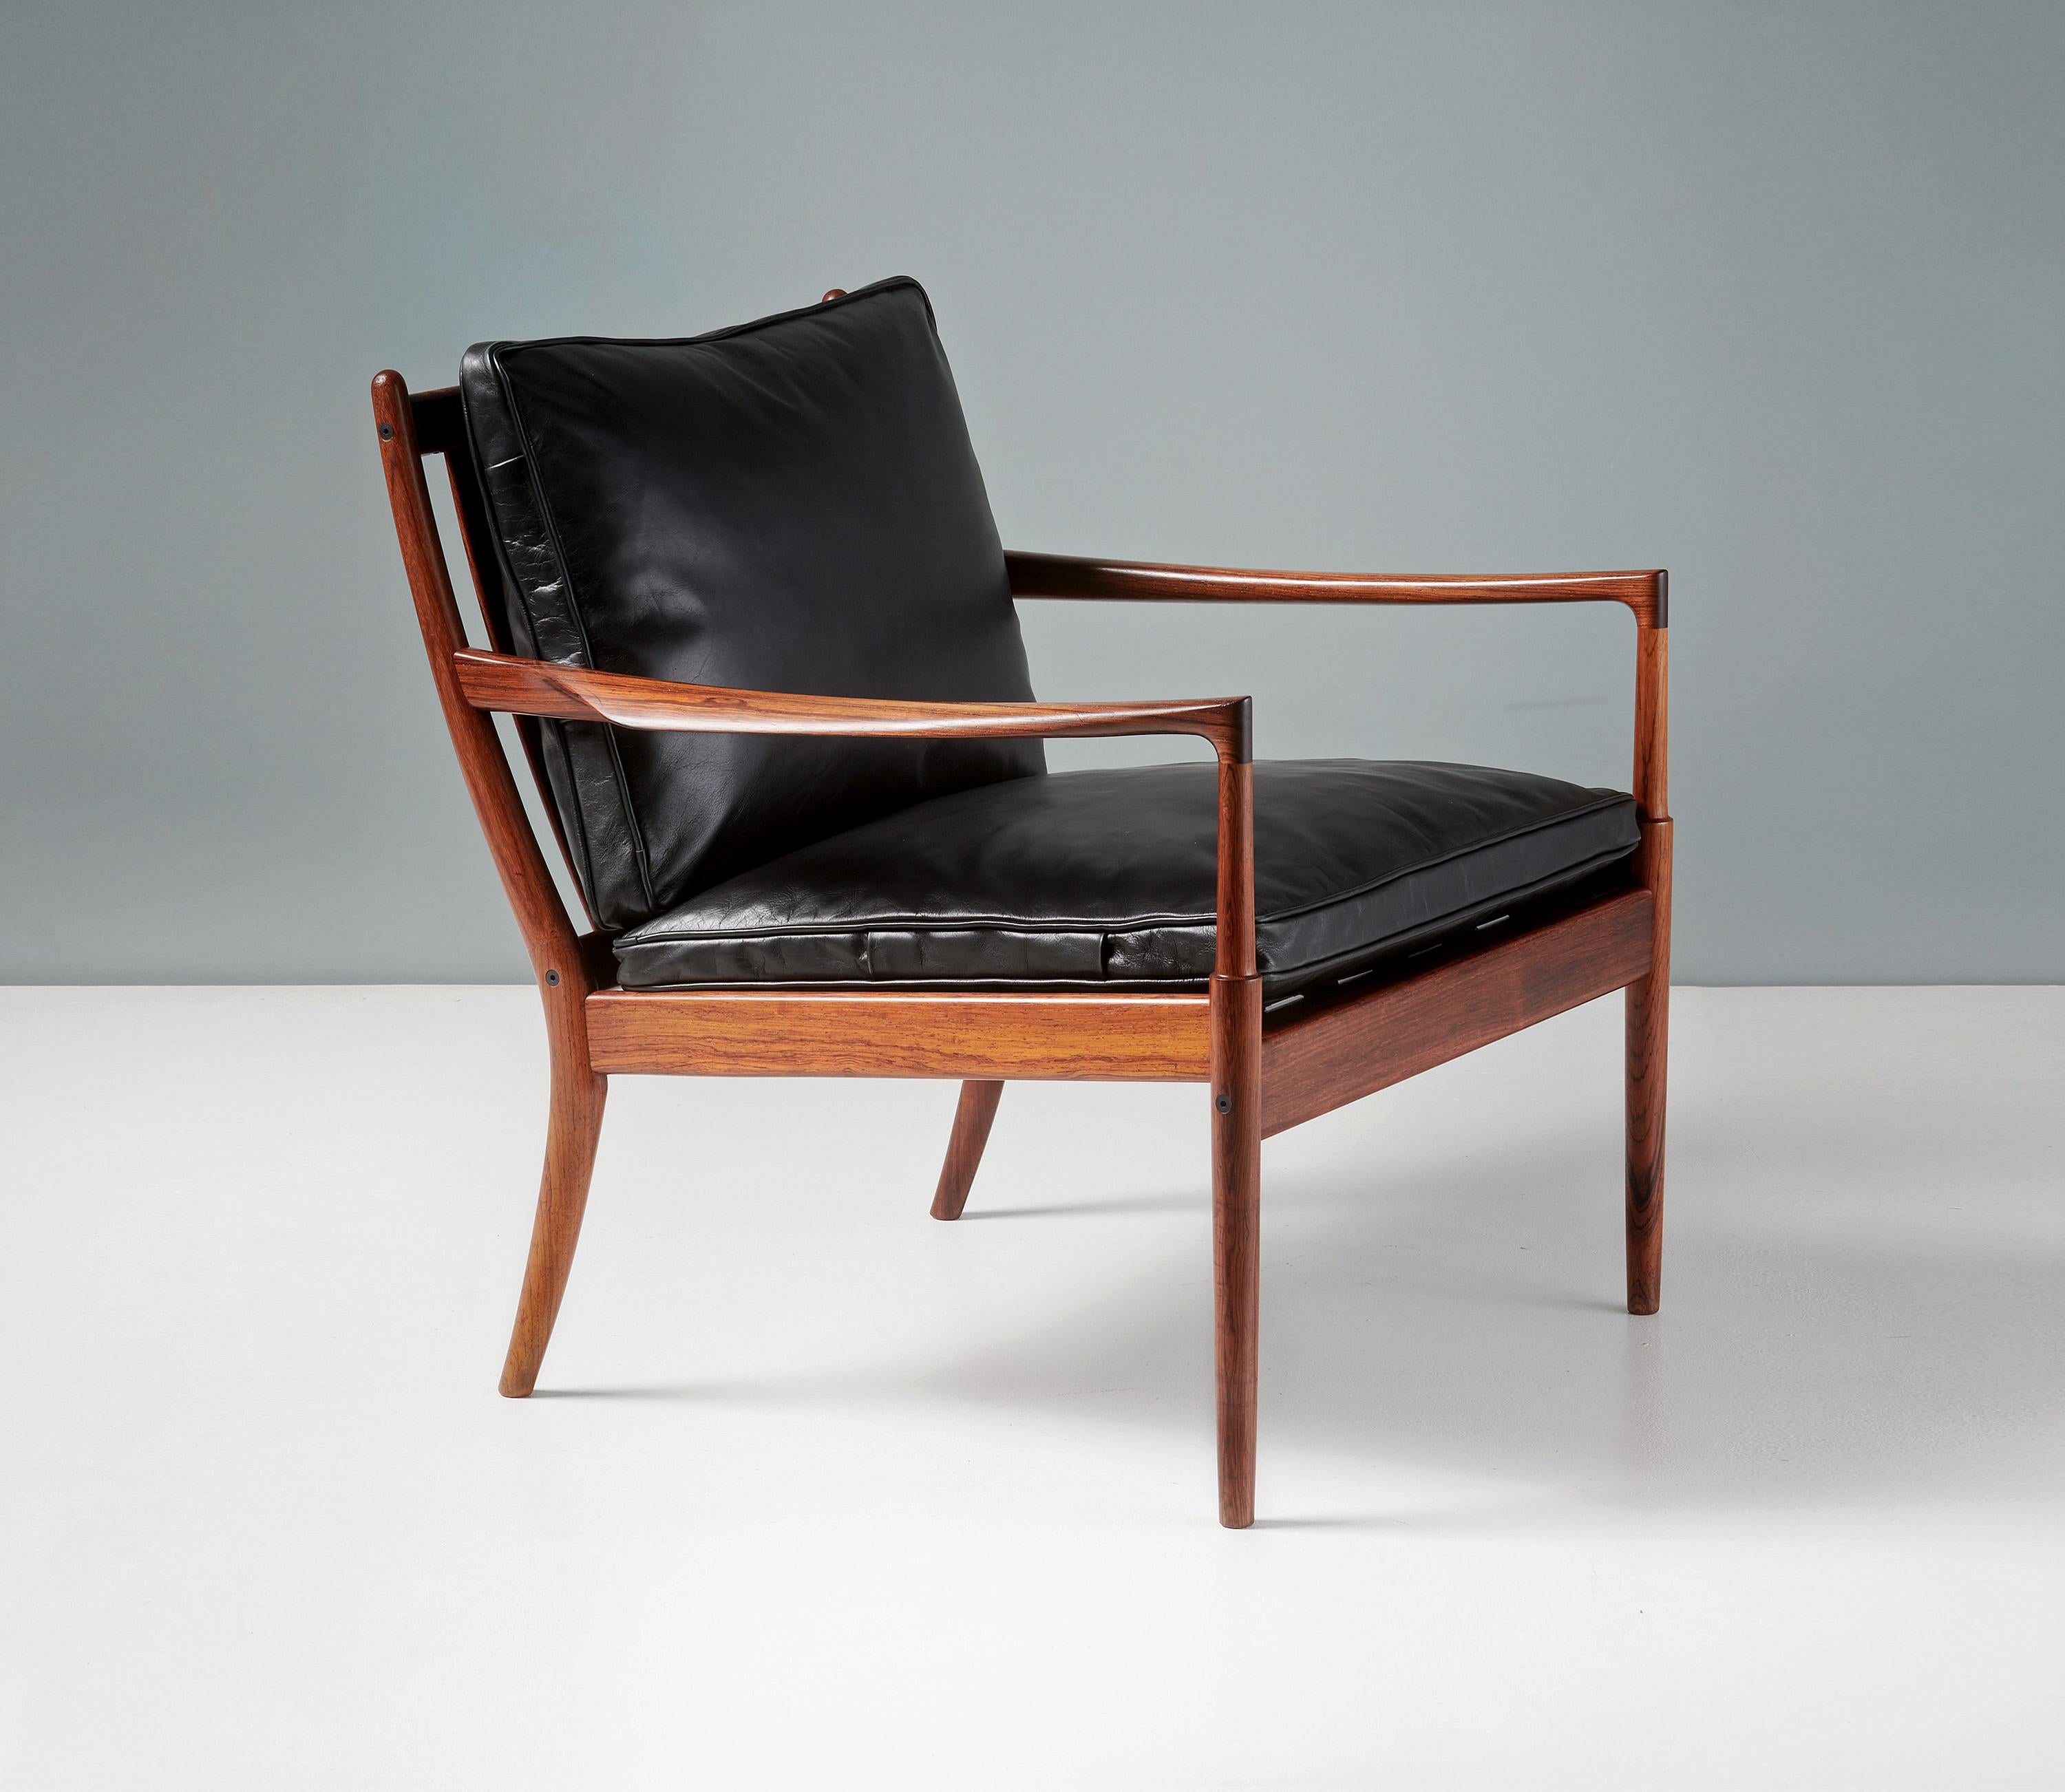 Ib Kofod-Larsen - Chaise longue Samso, 1958

Rare chaise longue produite pour Olof Perssons Fatoljindustri (OPE) à Jonkoping, en Suède, et conçue par le maître designer danois Ib Kofod-Larsen. Le cadre est en bois de rose et a été reverni à l'huile